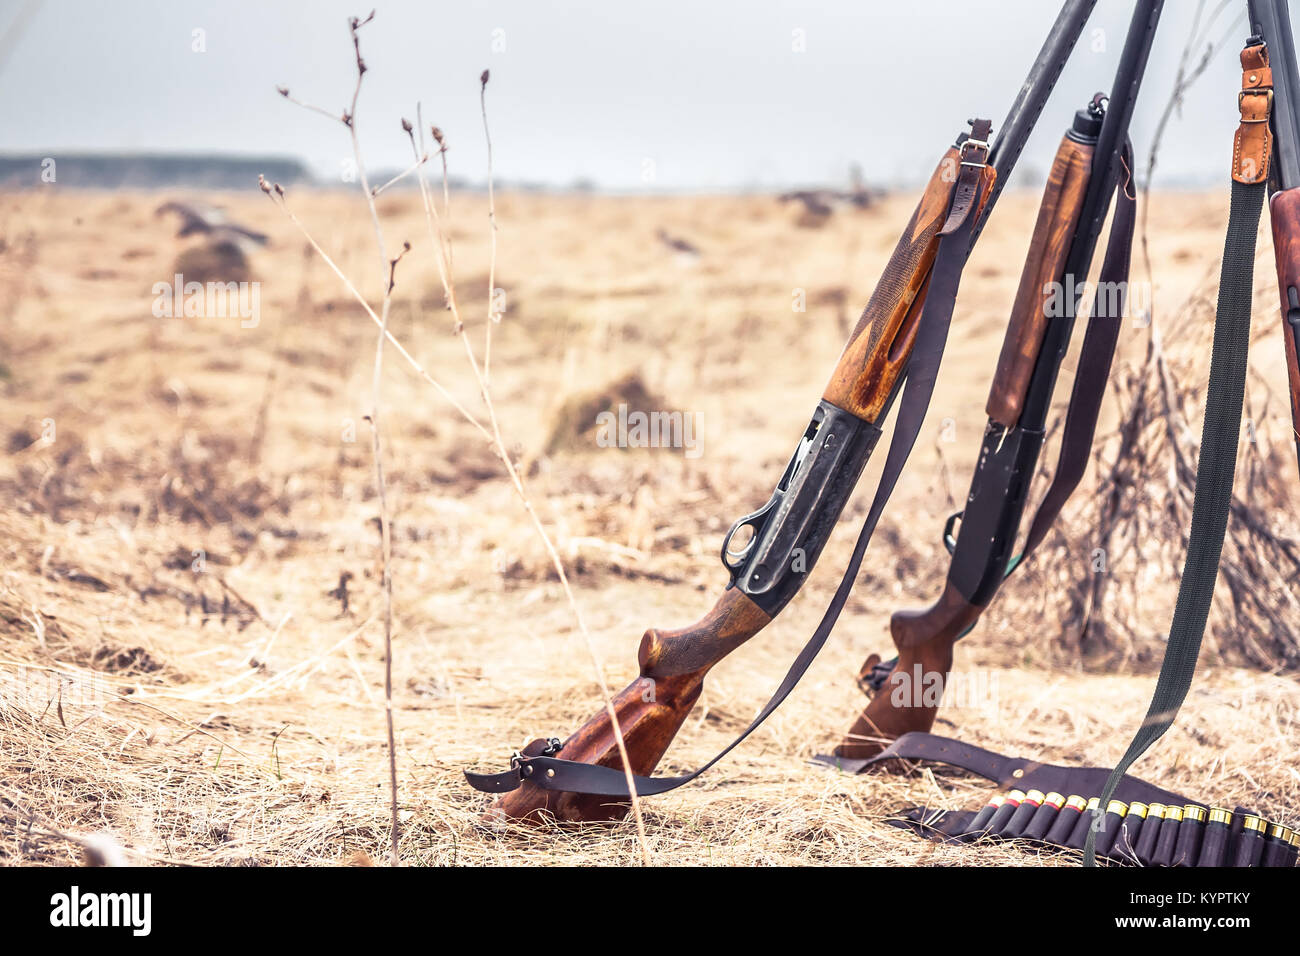 Scène de chasse avec des fusils de chasse et des munitions sur la courroie de l'herbe sèche en domaine rural pendant la saison de la chasse que la chasse en fond style far west Banque D'Images